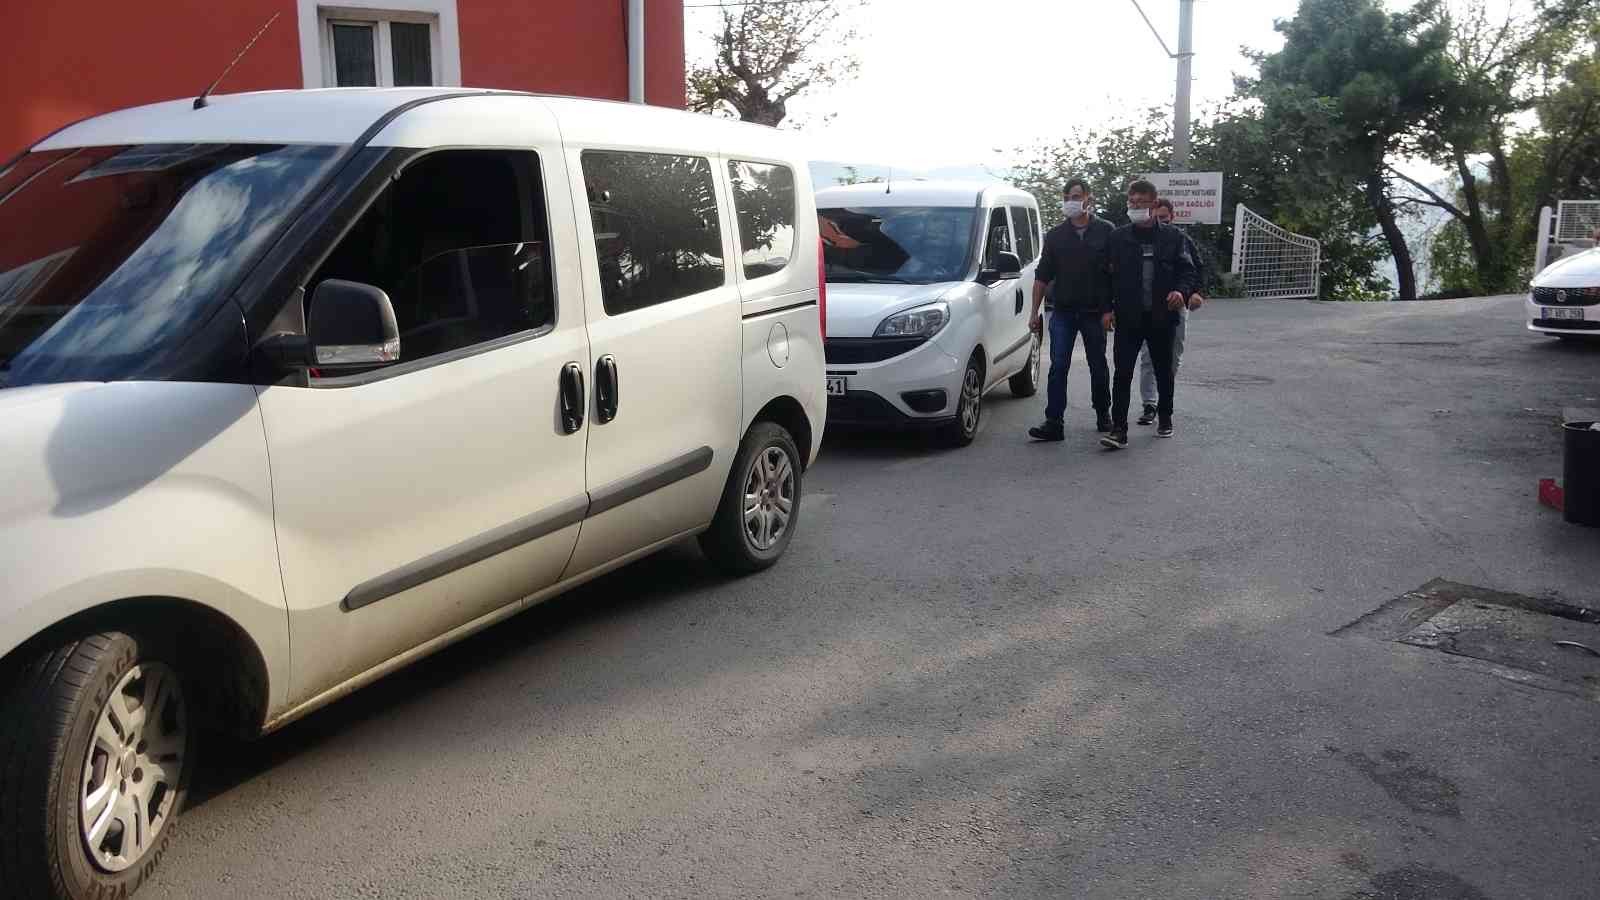 Çekirge Operasyonu’nda Zonguldak’ta gözaltılar sürüyor #zonguldak